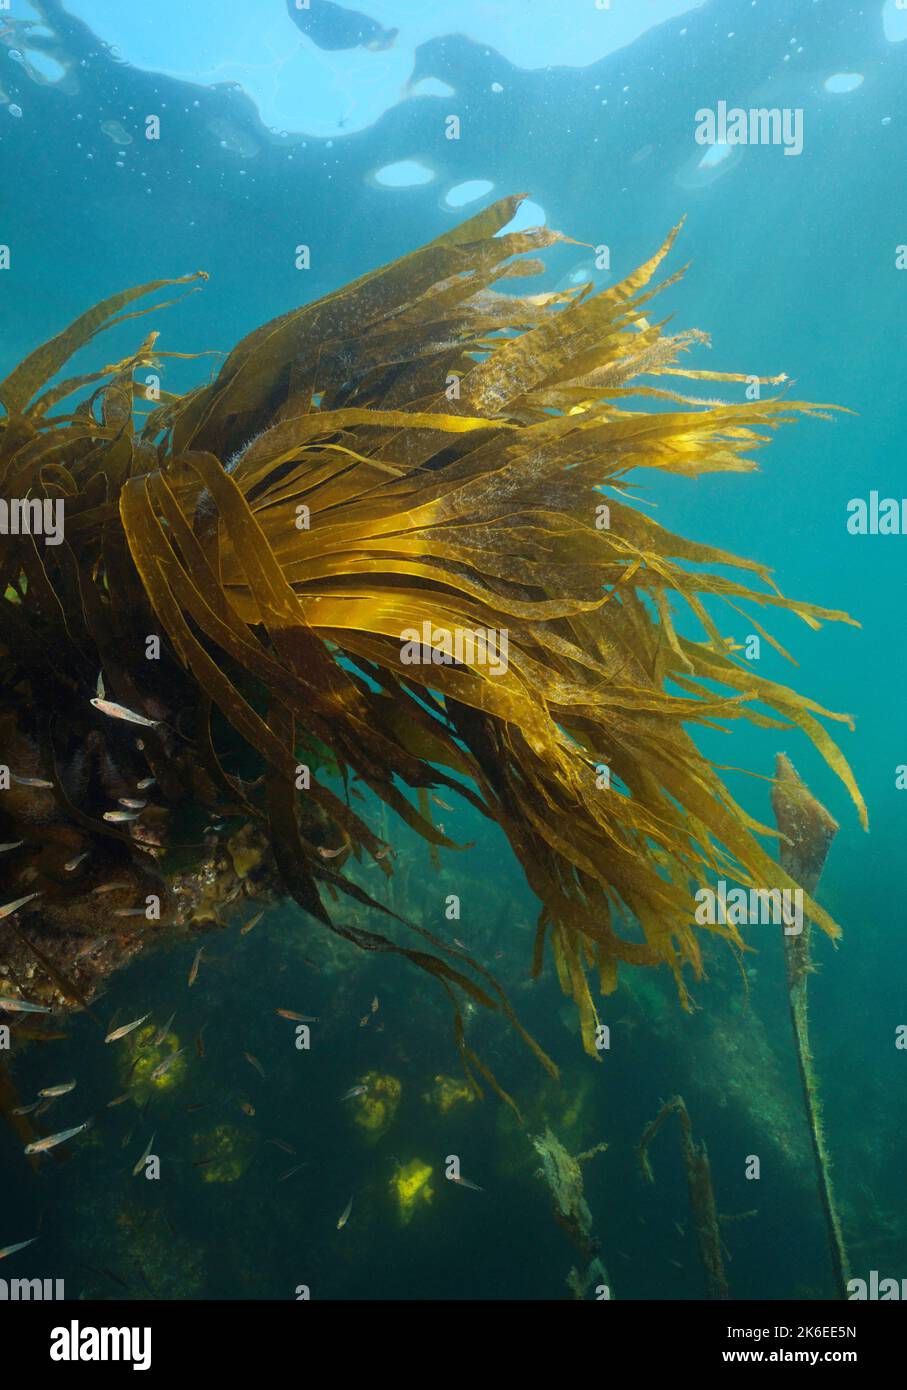 Laminaria kelp follaje de algas marinas, alga marrón bajo el agua, Atlántico oriental, España, Galicia Foto de stock